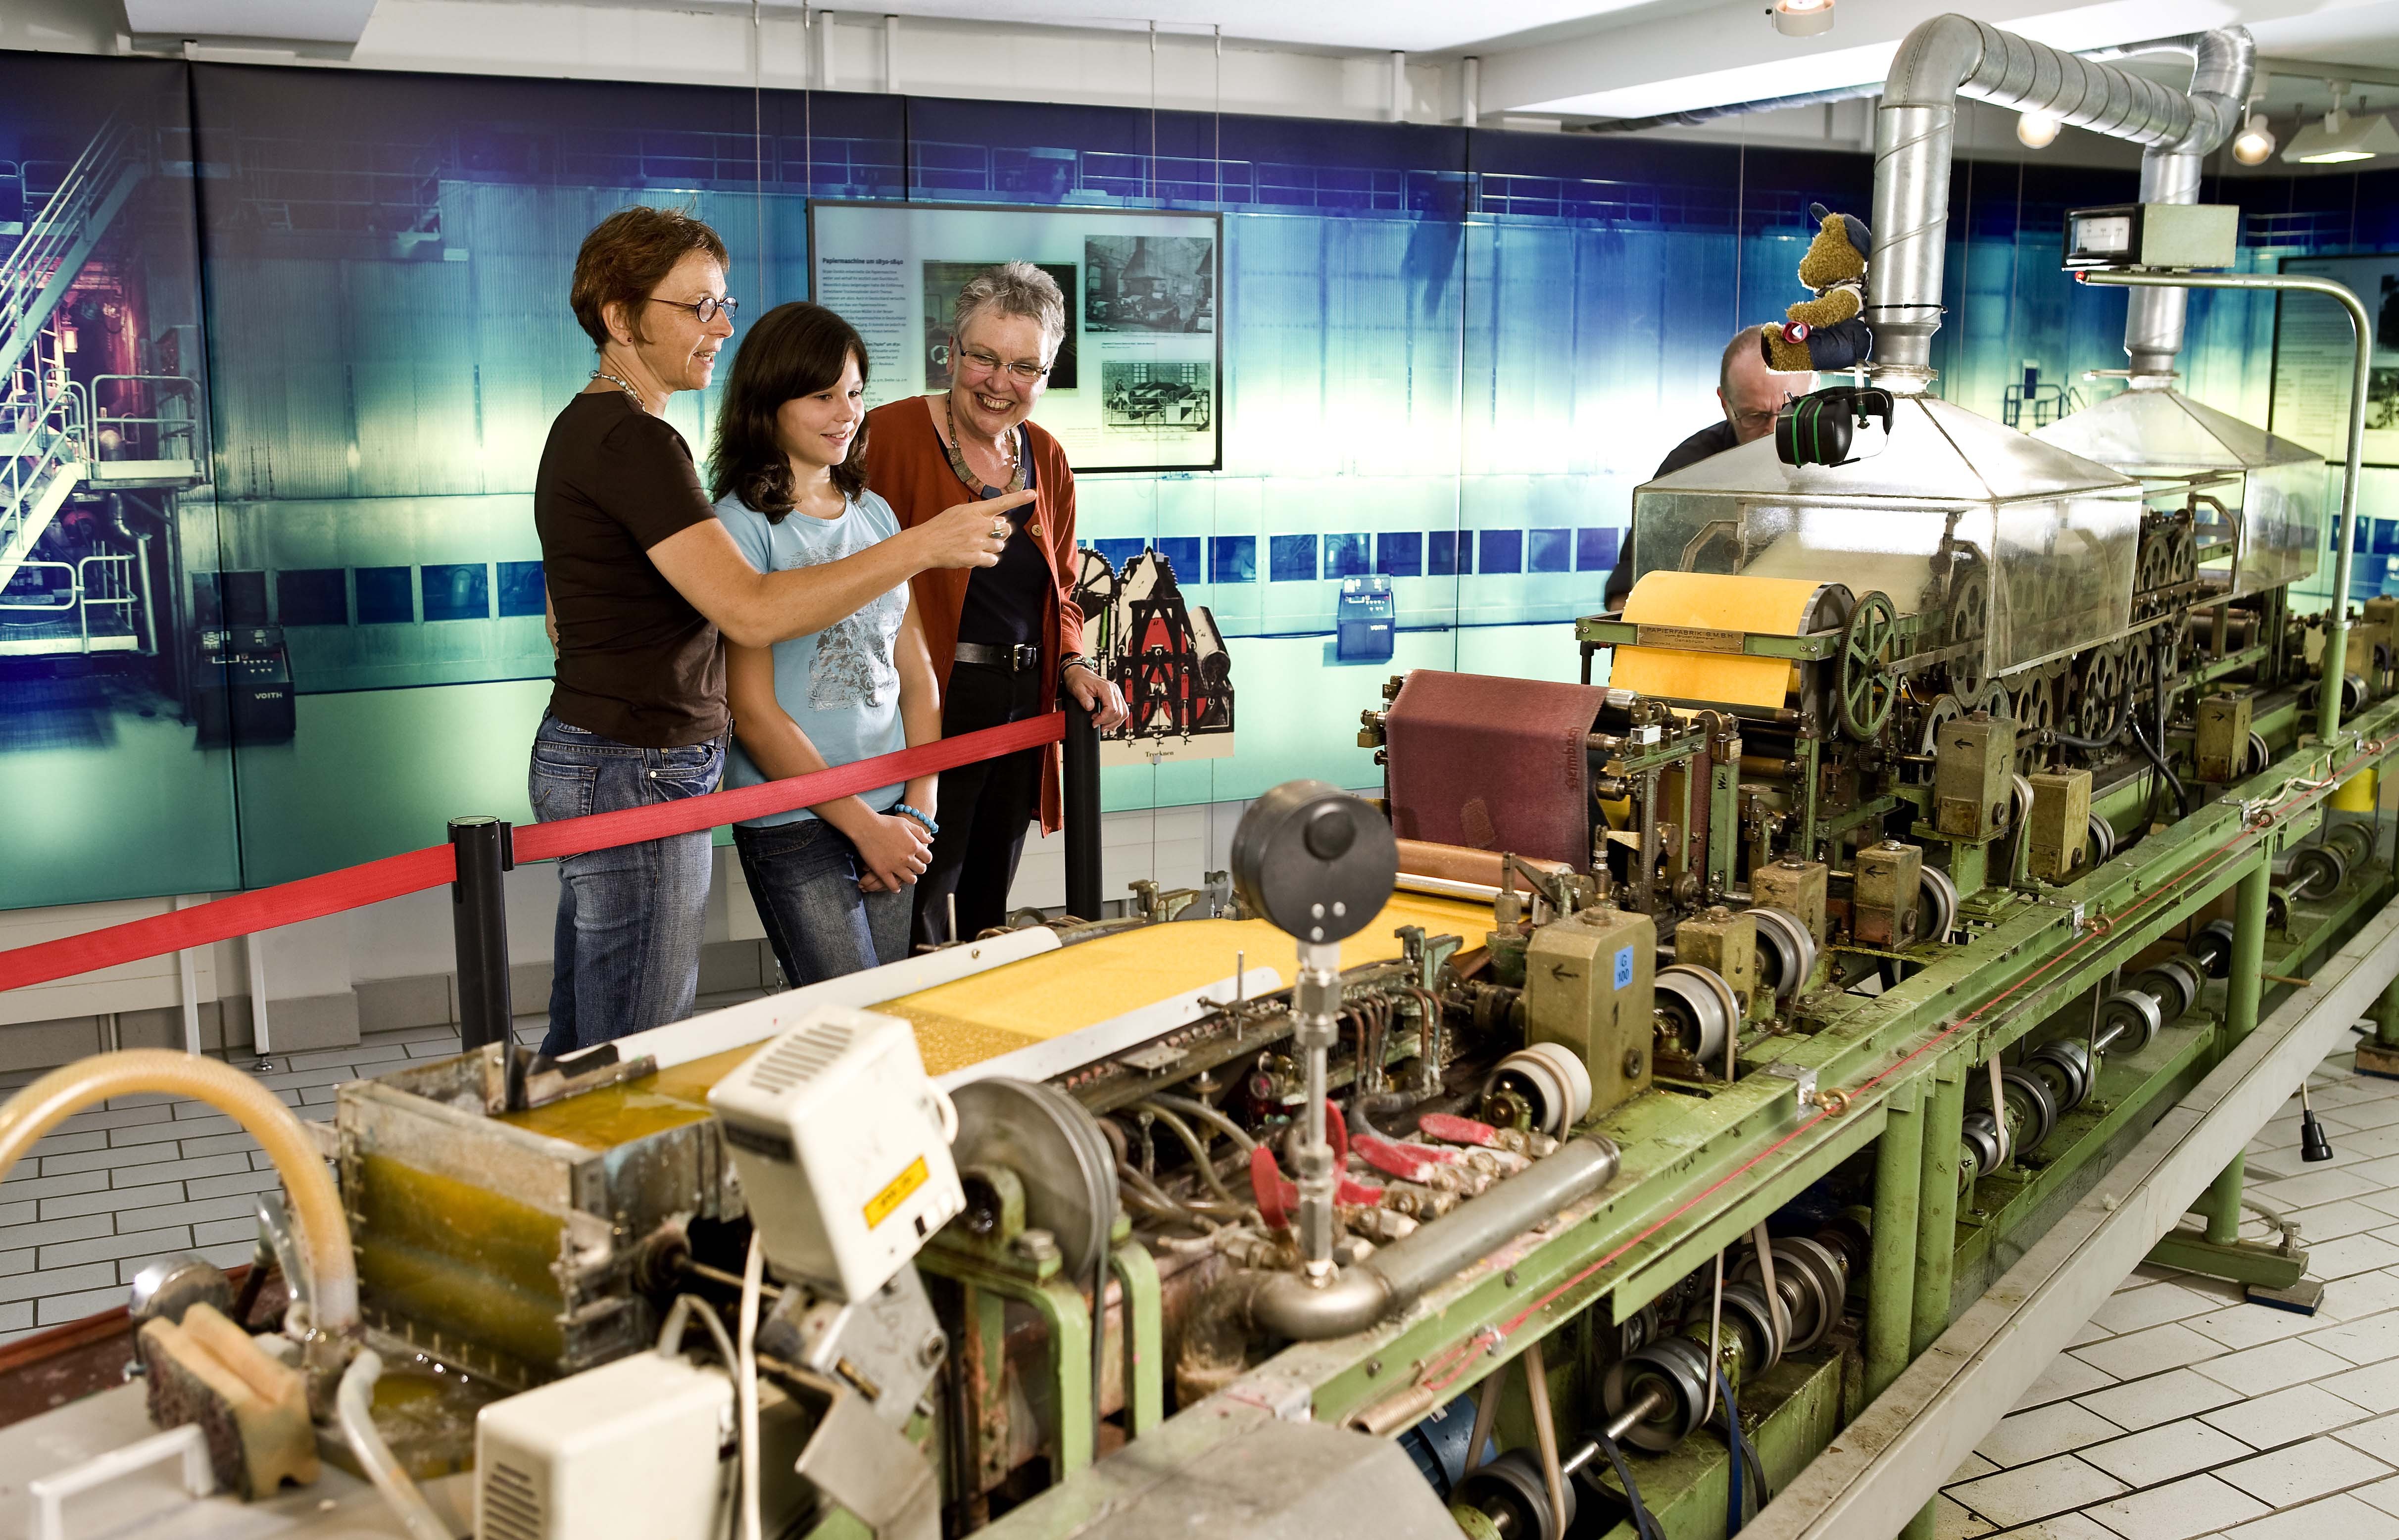 An einer Laborpapiermaschine können die Besucher verfolgen, wie Papier maschinell entsteht.